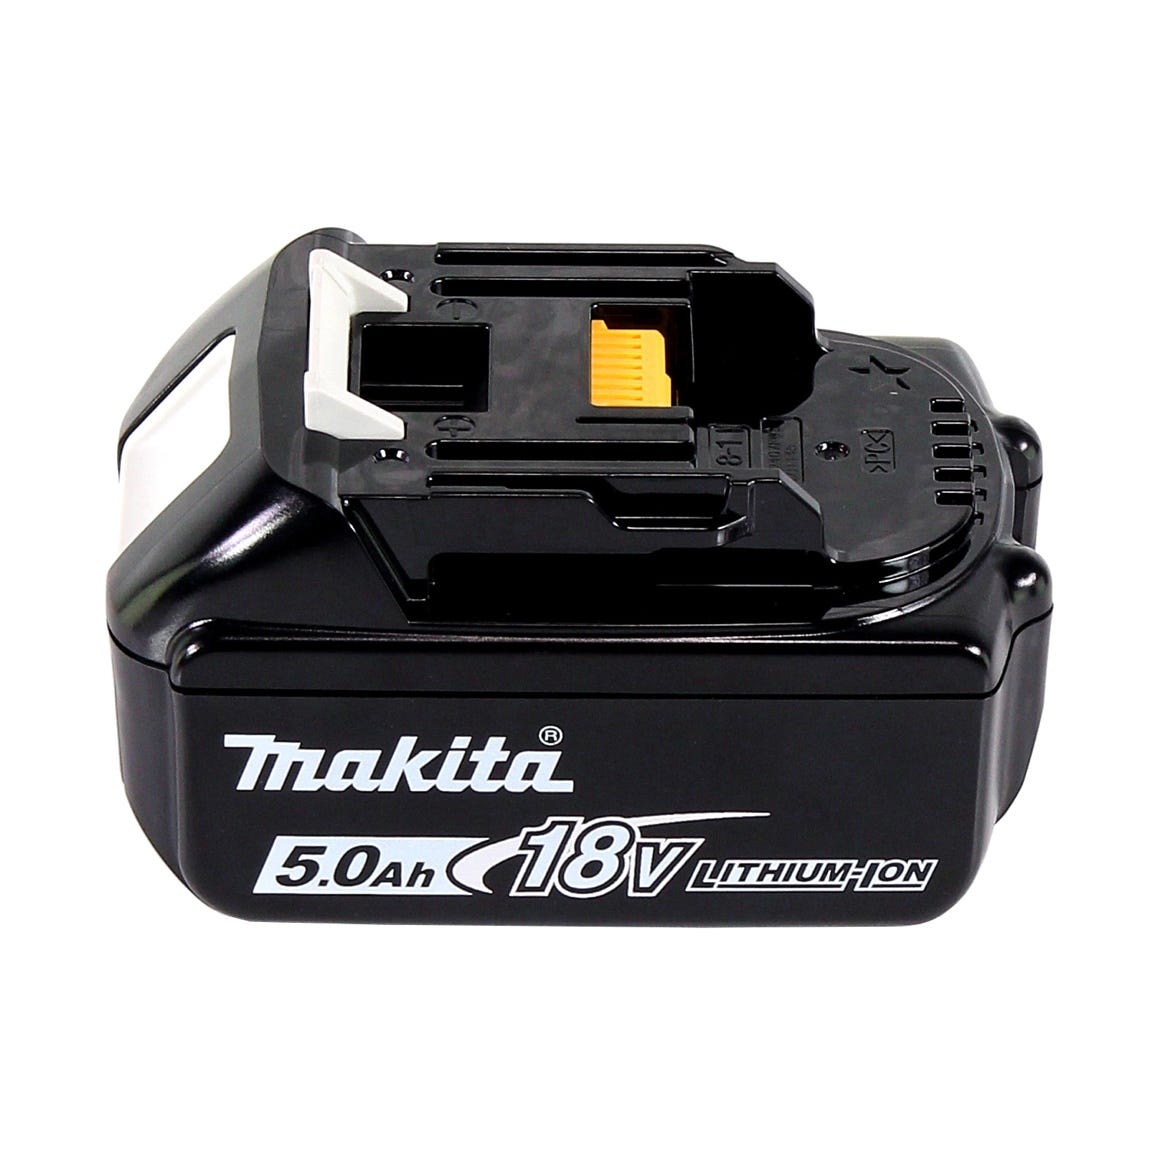 Makita DFN 350 T1 Cloueur sans fil 15 - 35mm 18V + 1x Batterie 5,0 Ah - sans chargeur 2